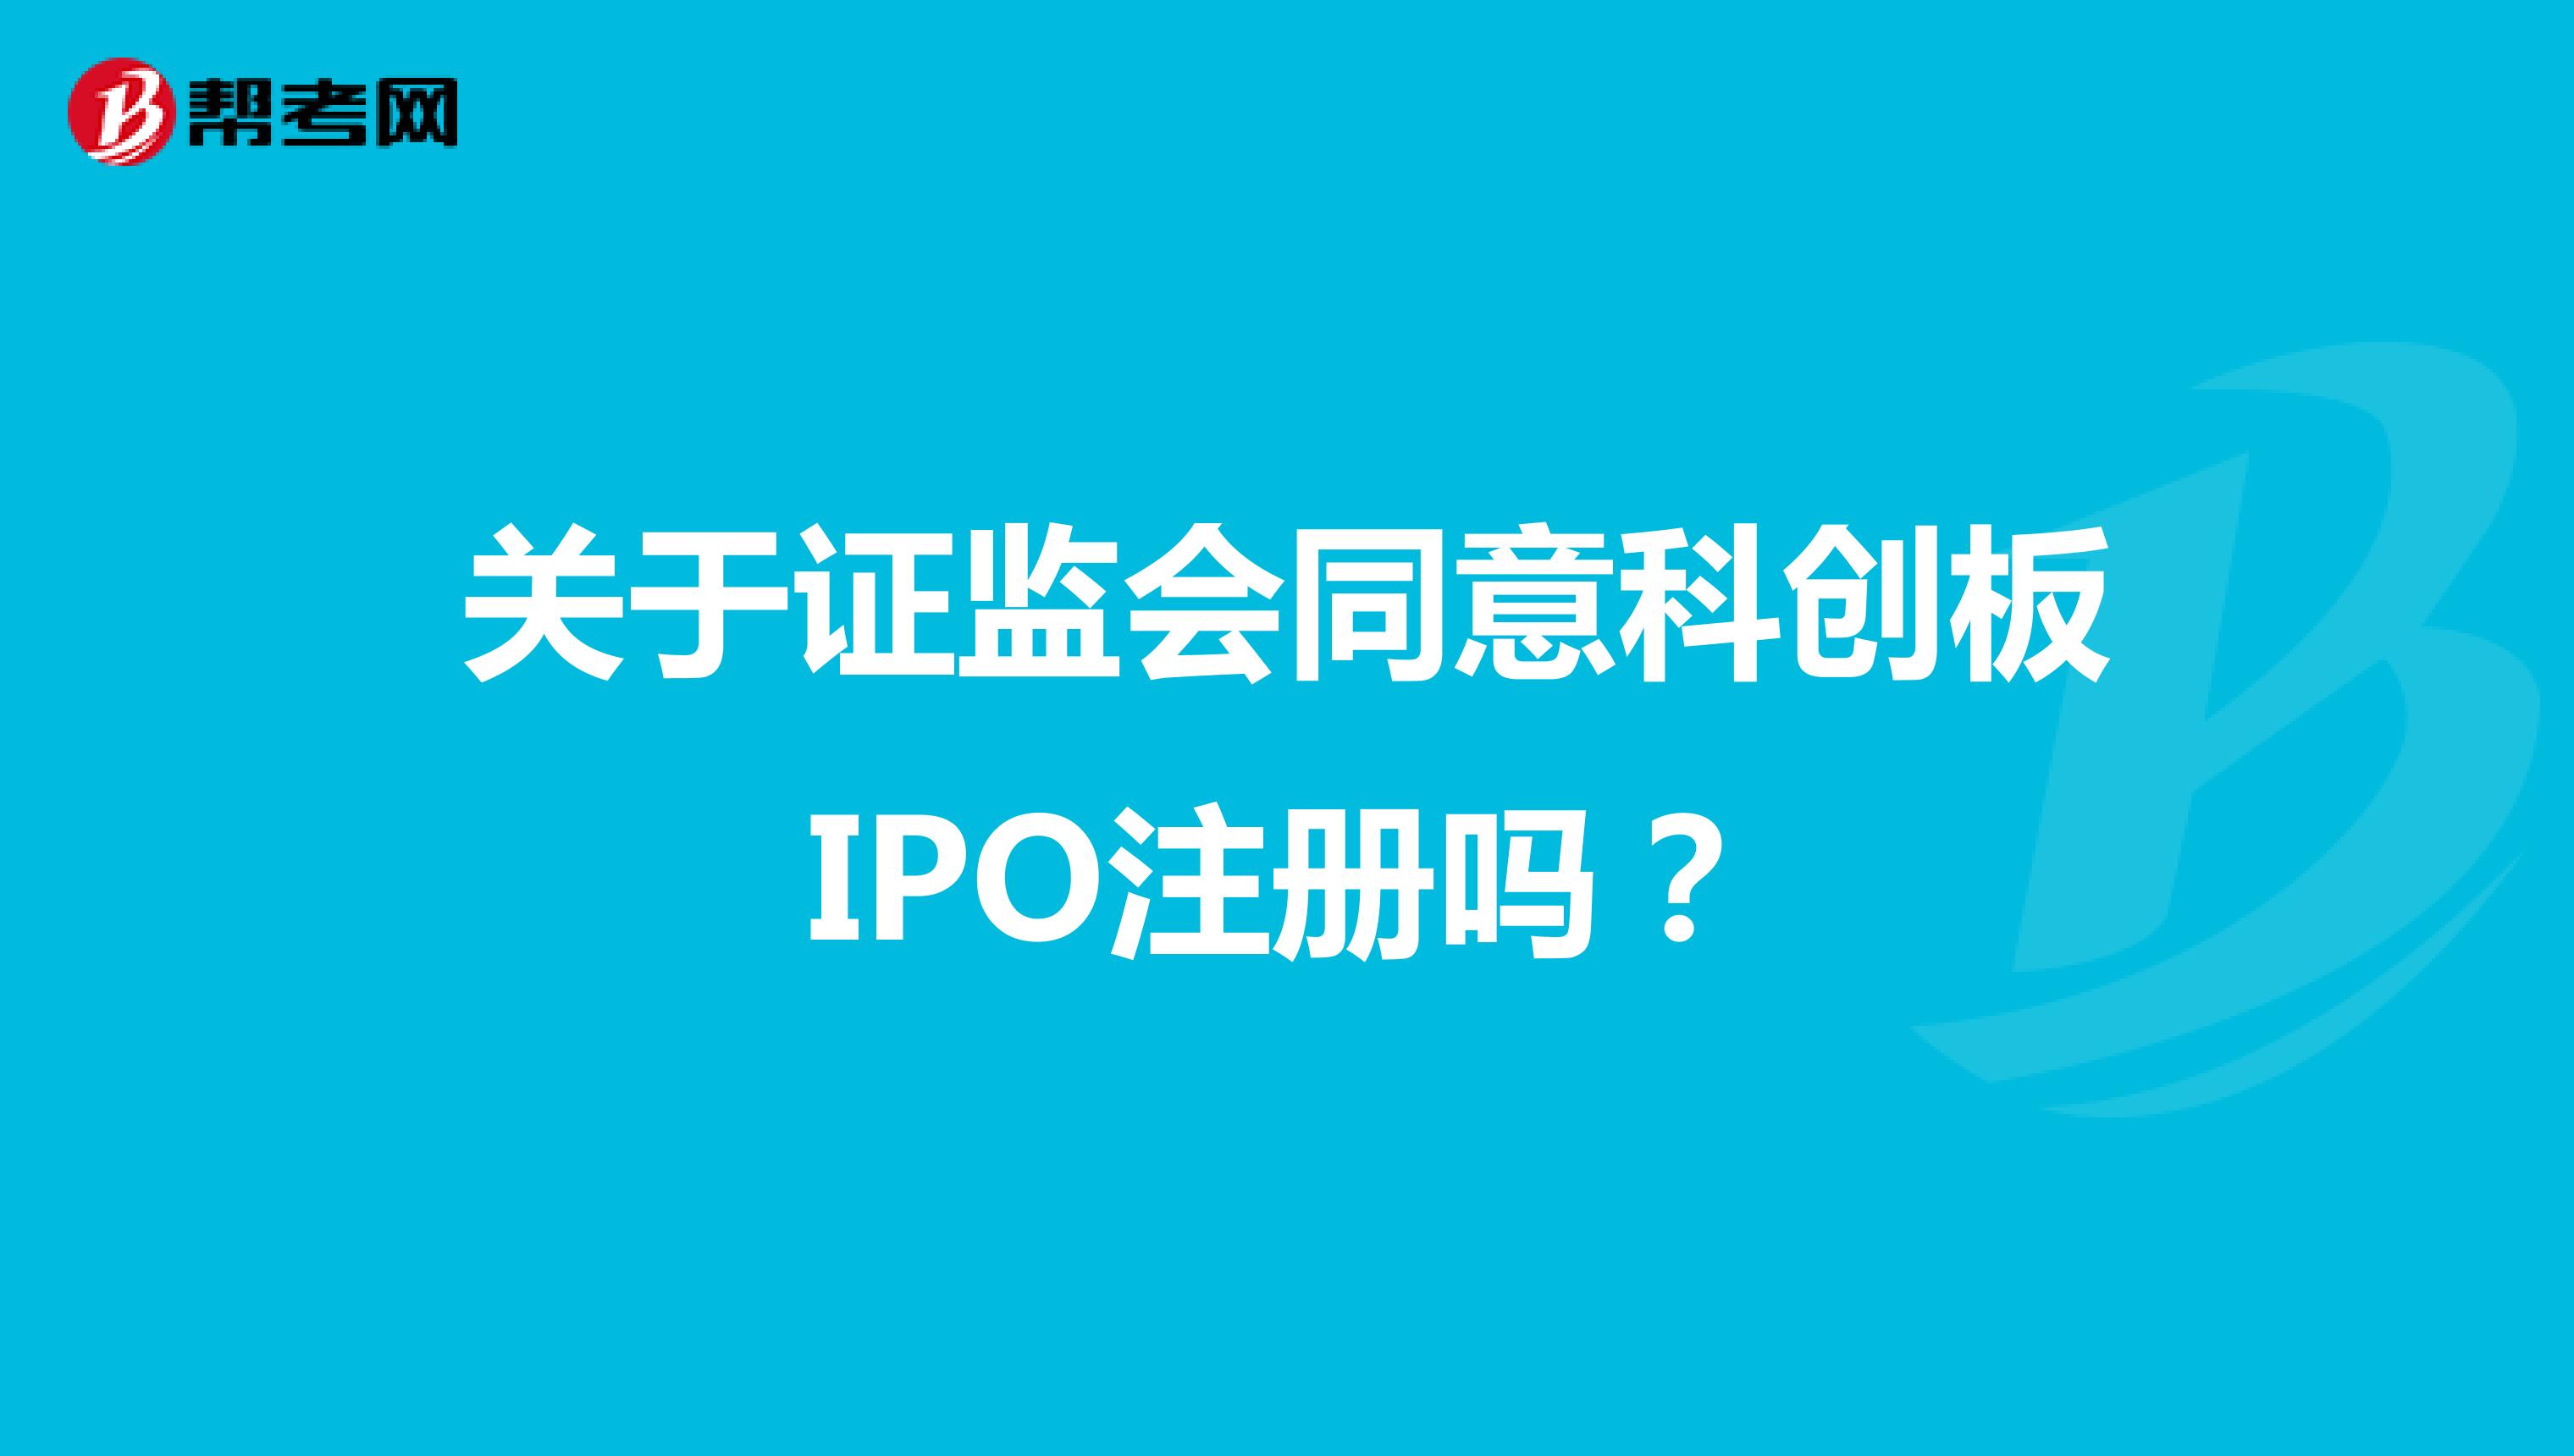 关于证监会同意科创板IPO注册吗？